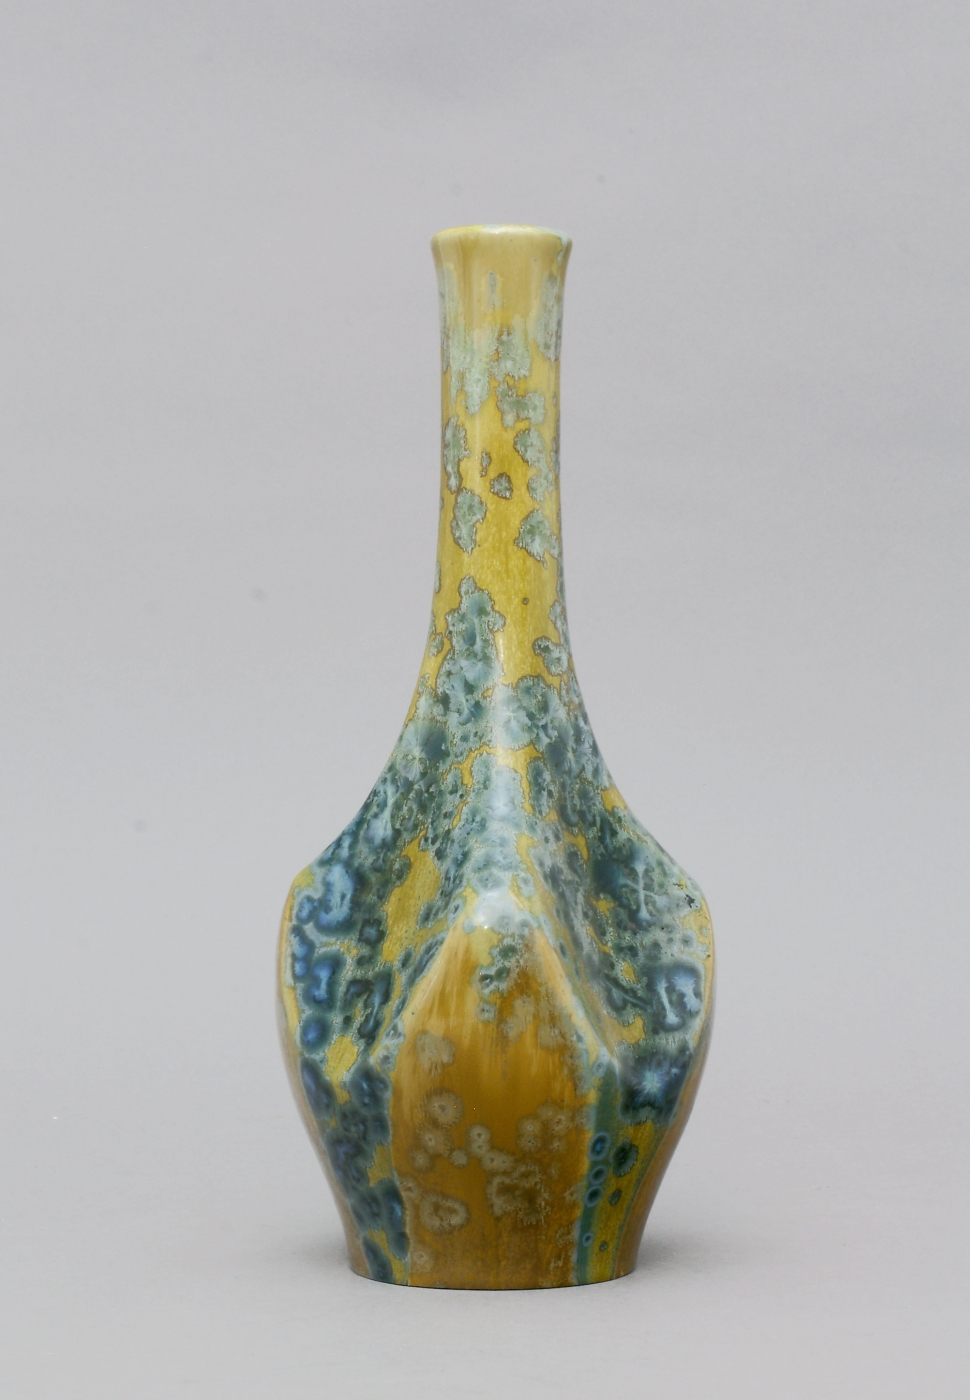 Auktionshaus Quentin Berlin  Porzellan / Fayence Vase  Keramik  ''Pierrefonds'' in Oise  Picardie  um 1907